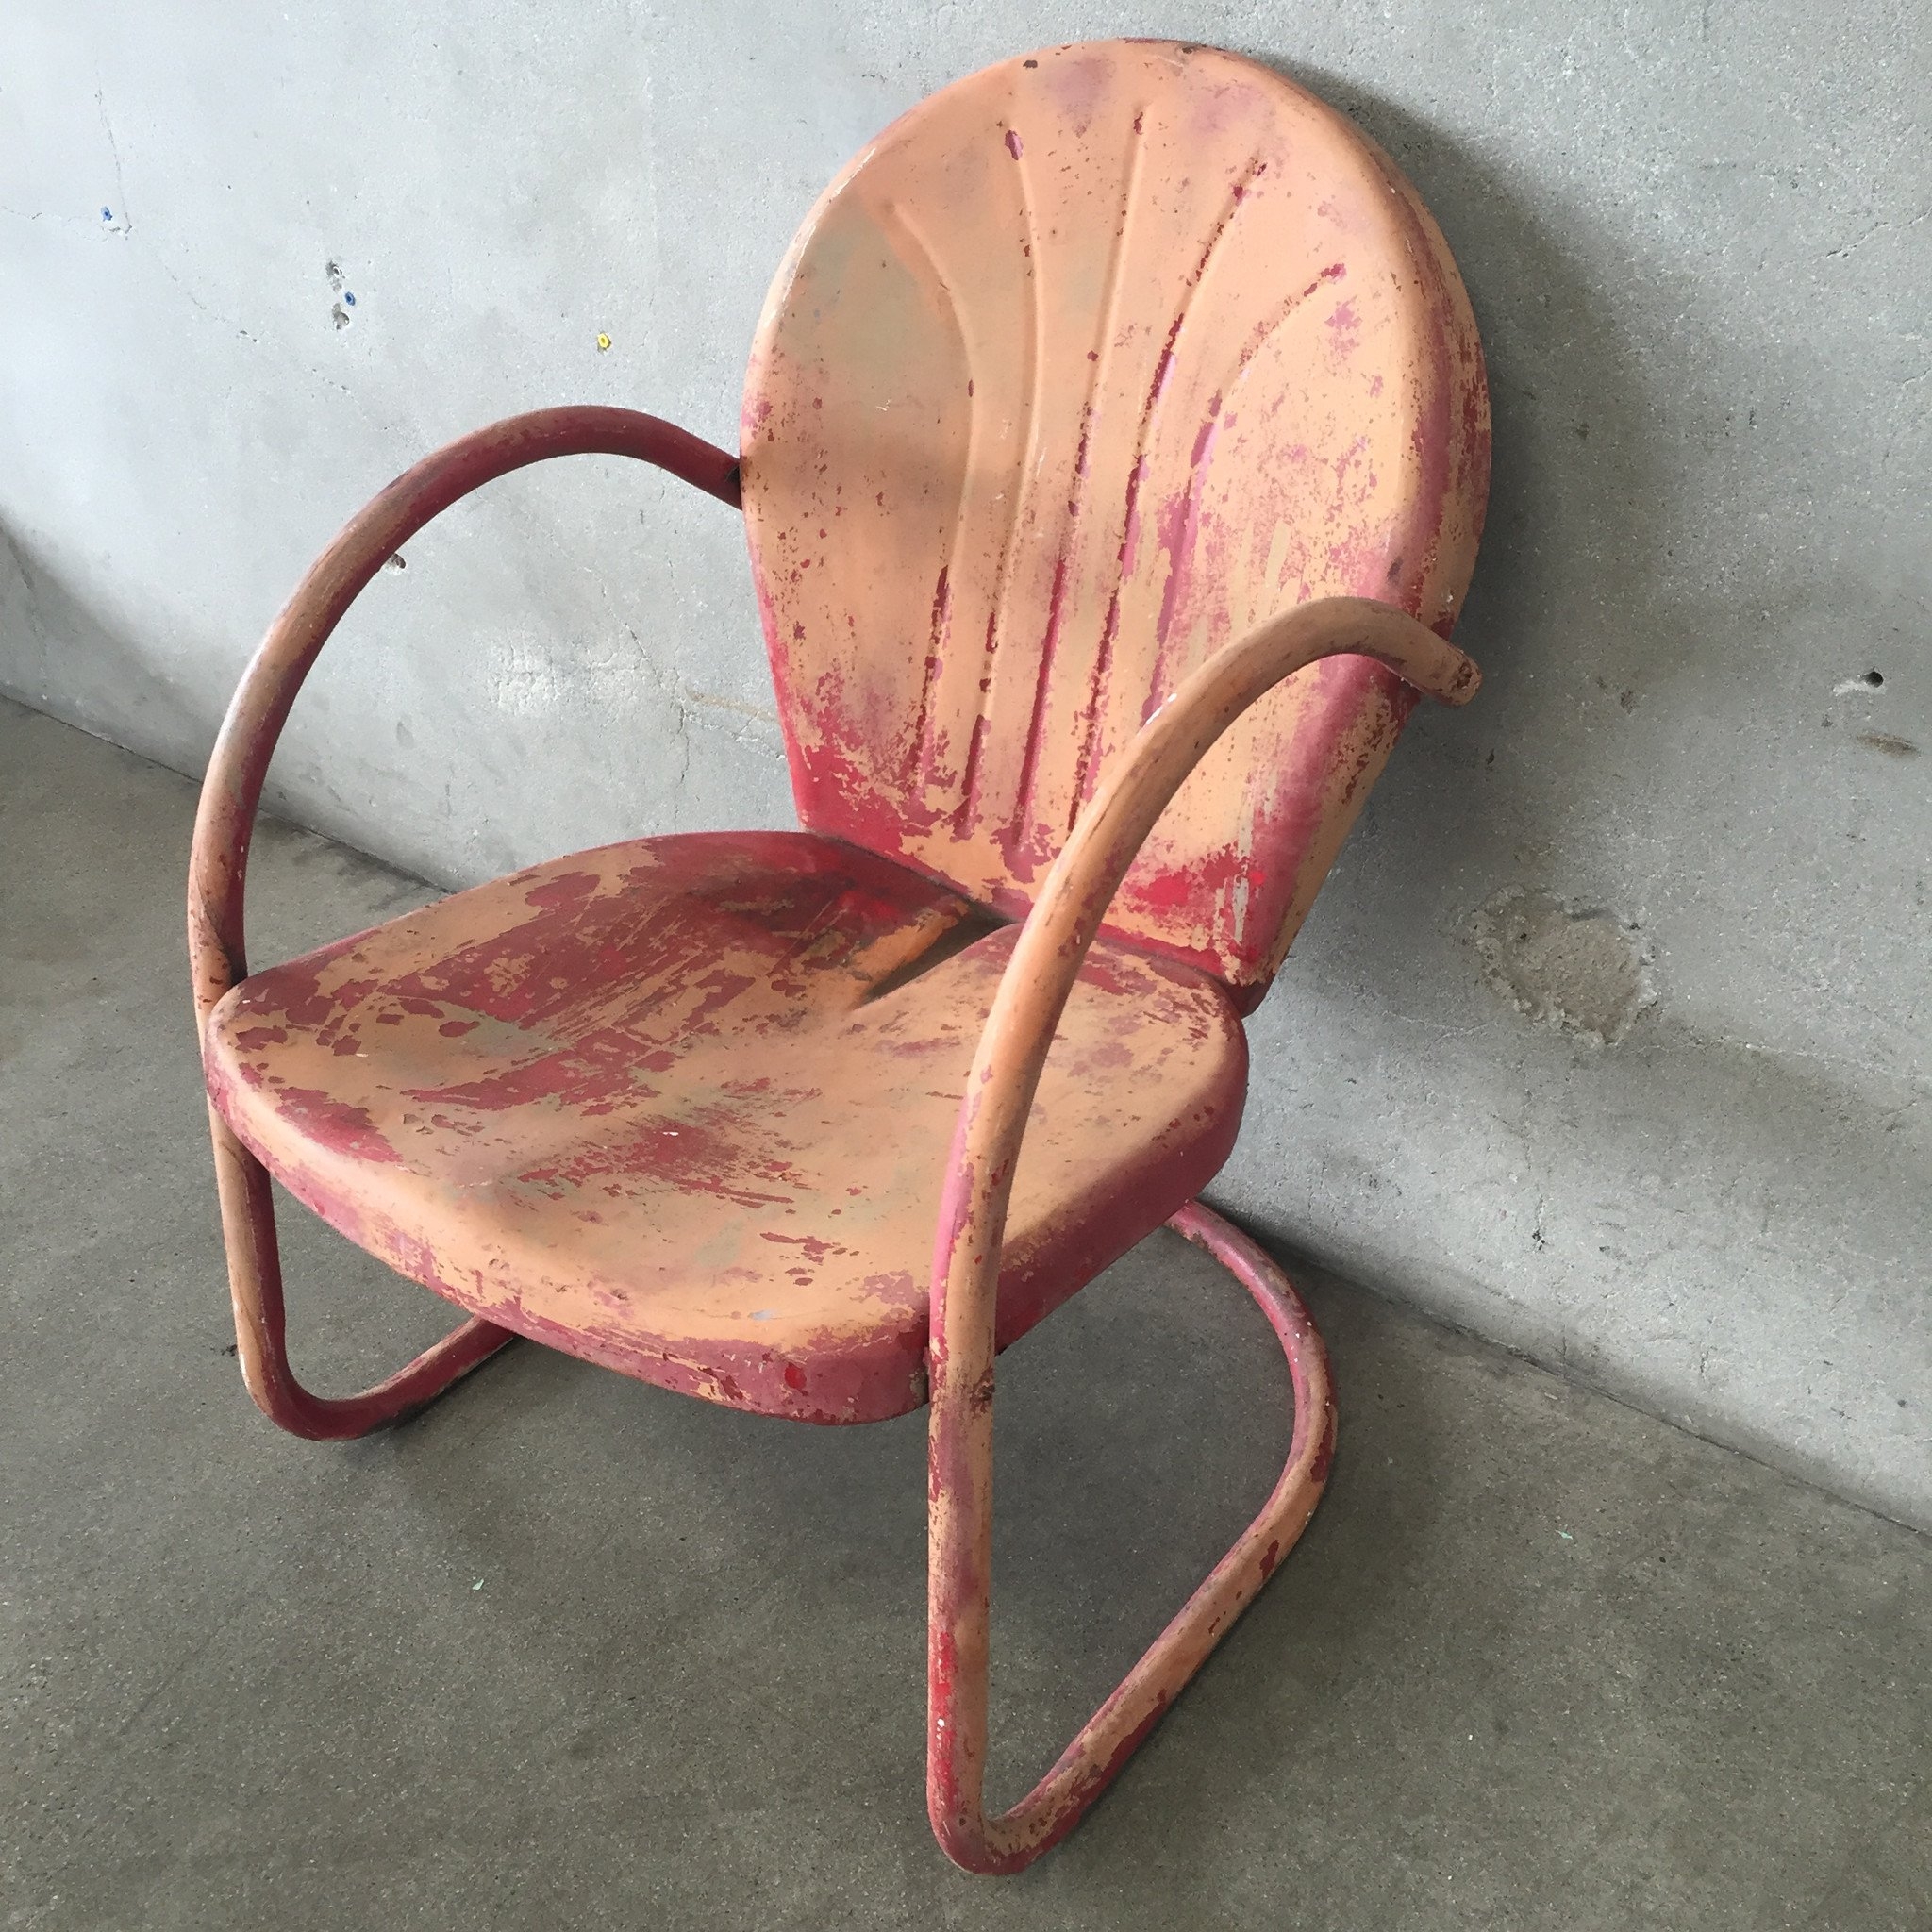 Vintage Metal Lawn Chairs Visualhunt, Vintage Look Metal Outdoor Chairs